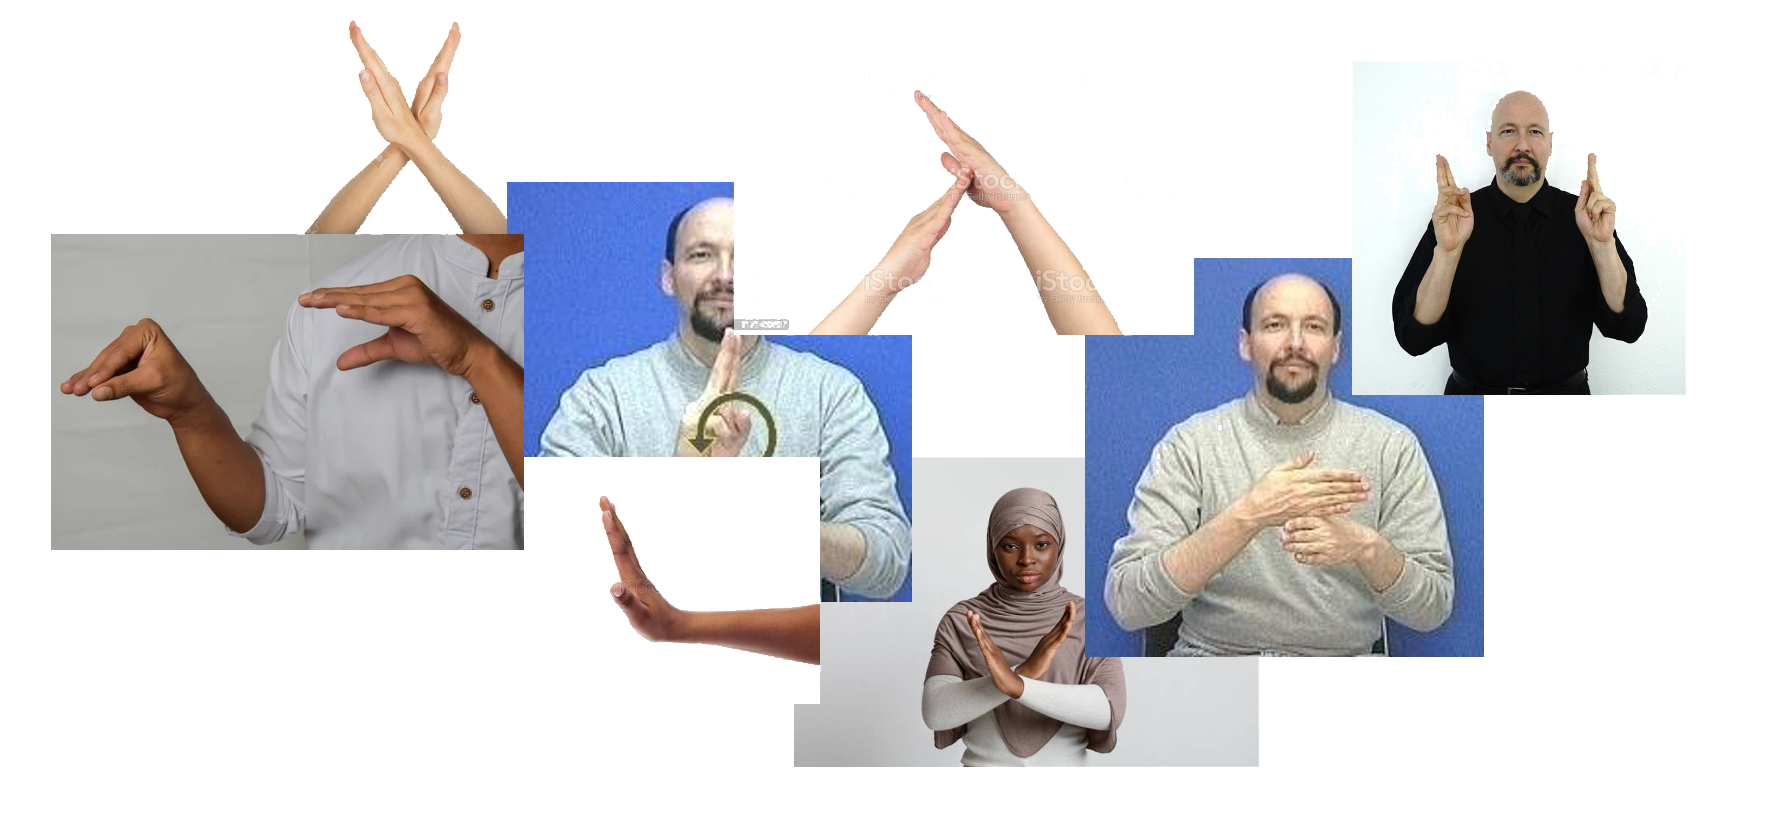 montage of hands gesturing stop